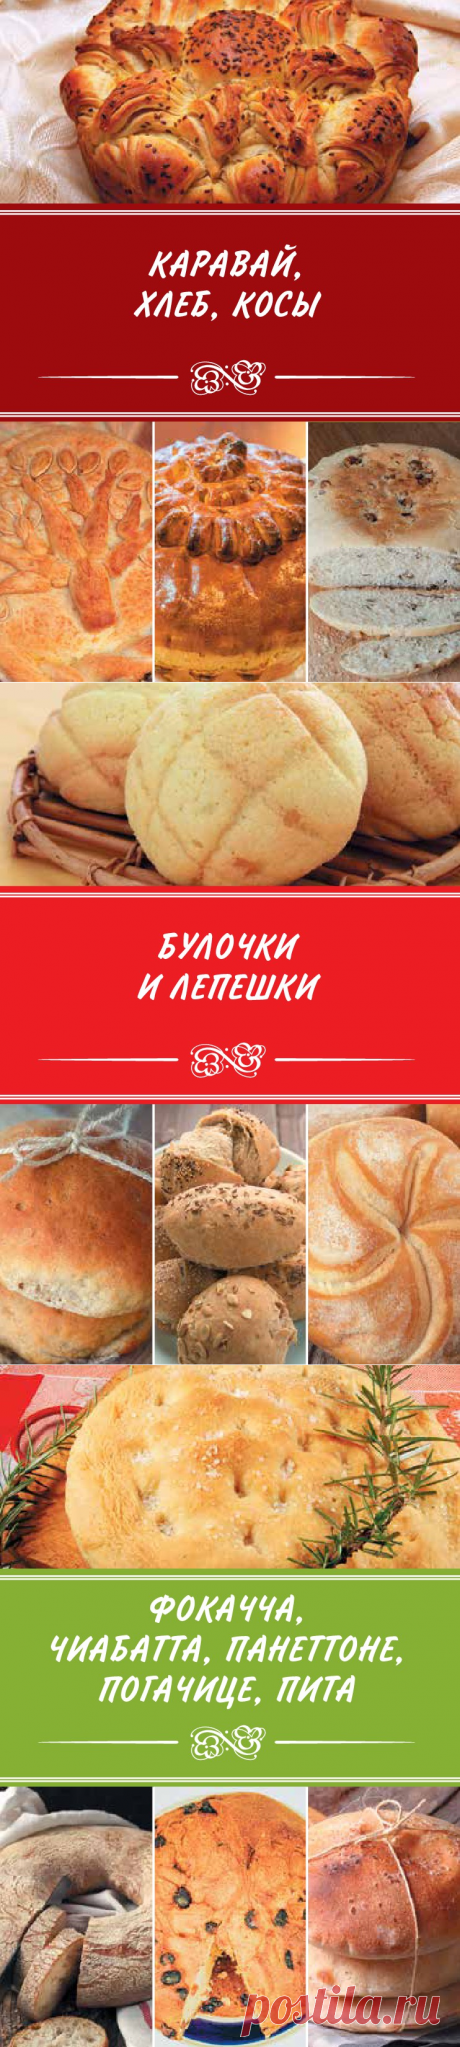 Архив: Ароматный хлеб. Готовим в мультиварке